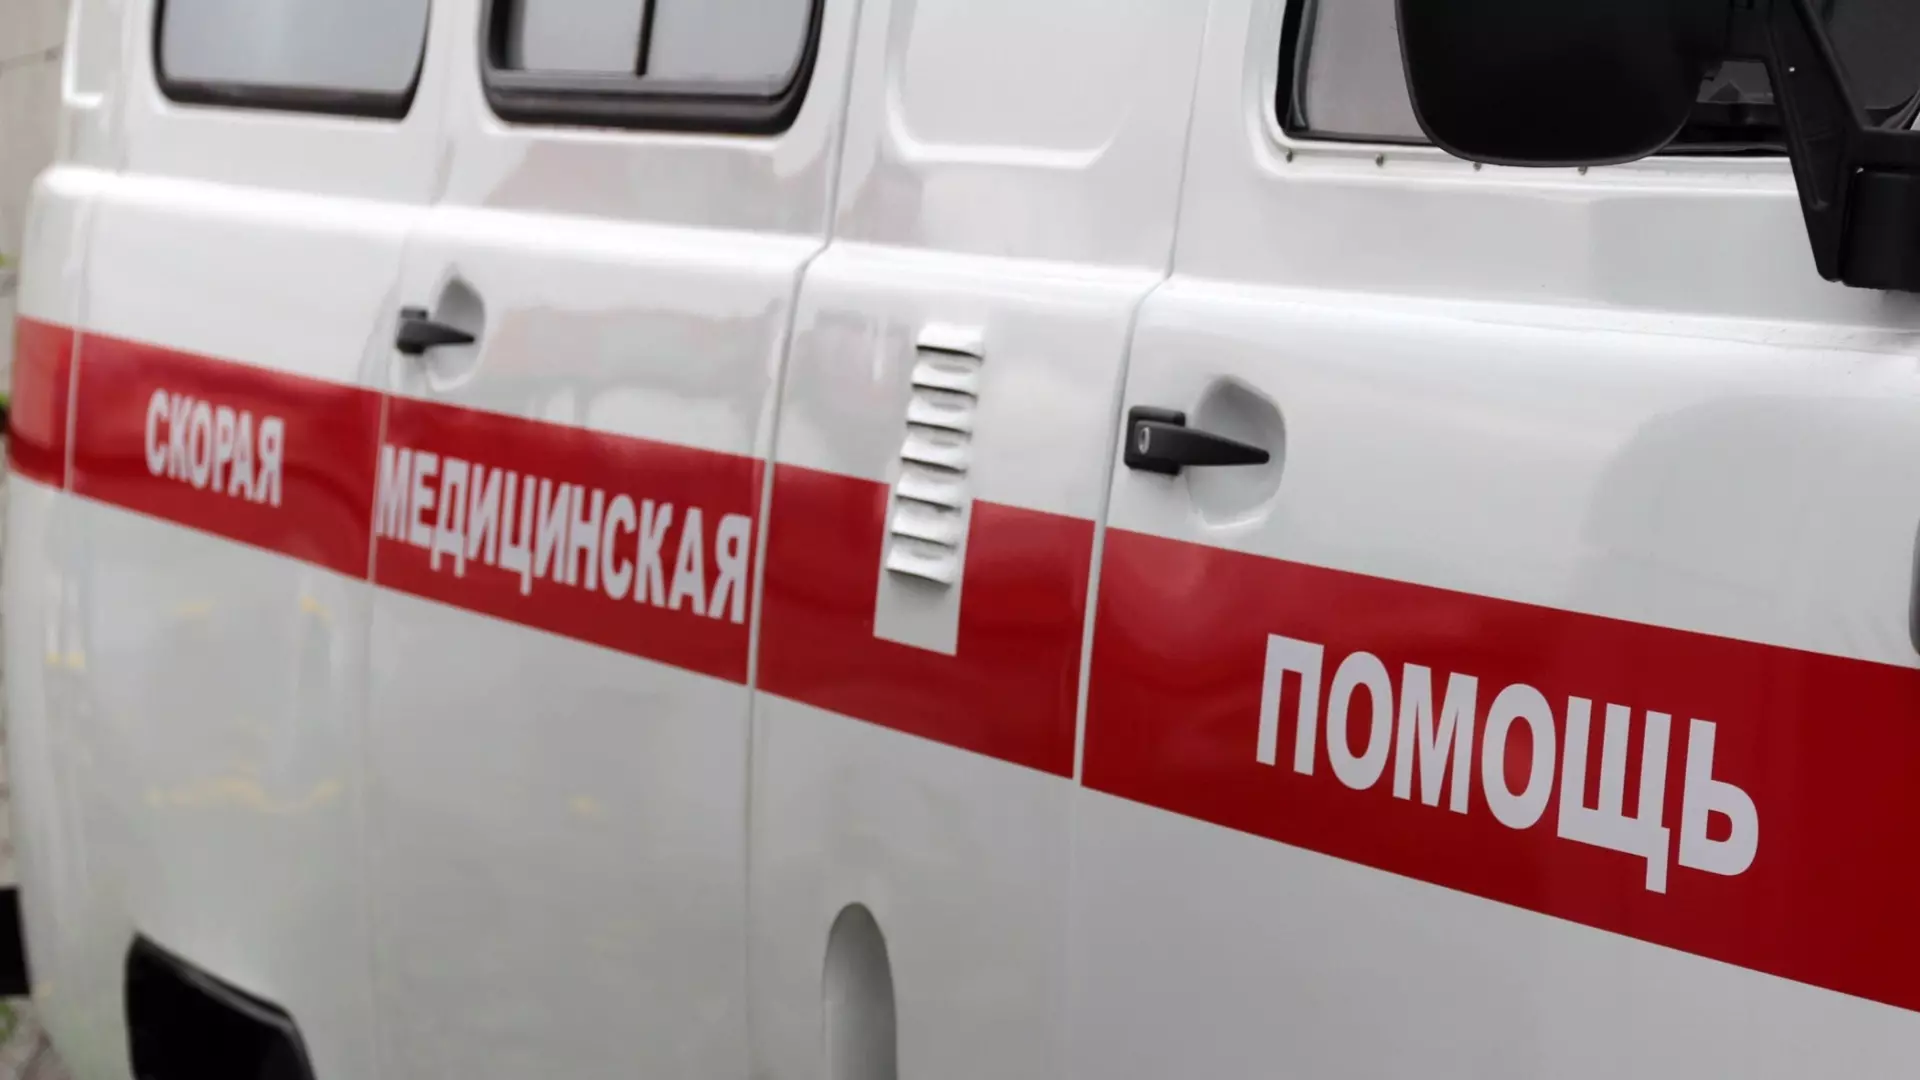 Известна судьба детей, пострадавших в ДТП с грузовиком в Карелии